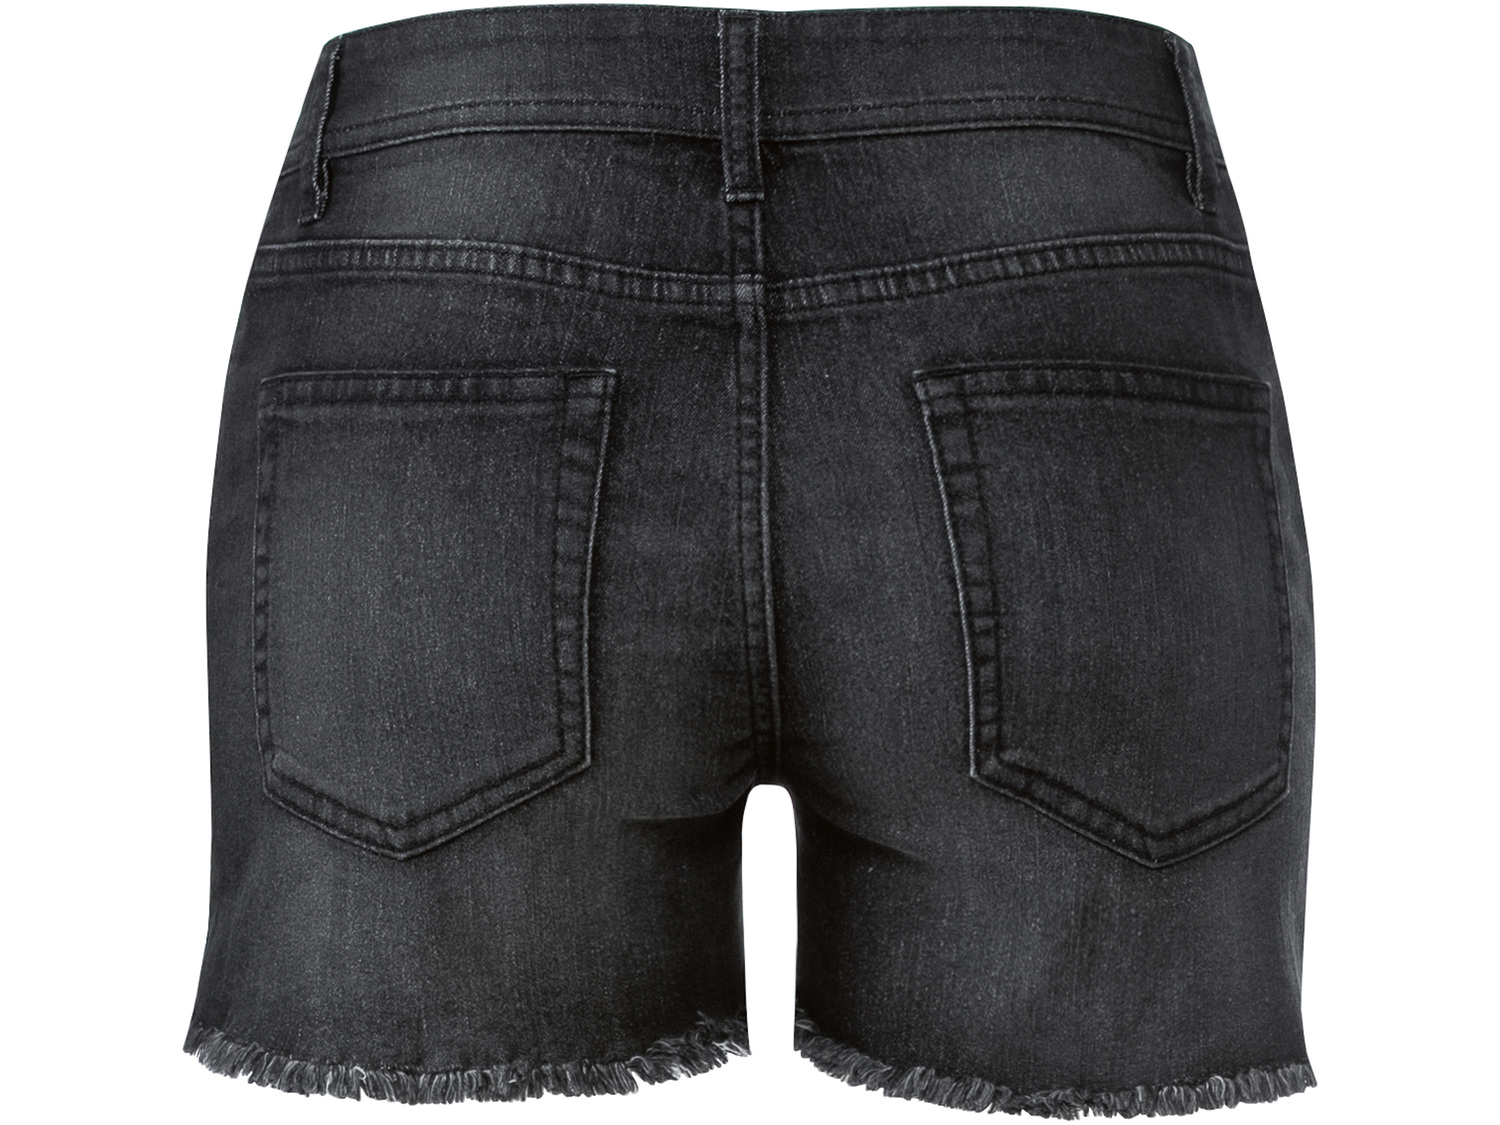 Szorty jeansowe damskie Esmara, cena 29,99 PLN 
- rozmiary: 36-46
- wysoka zawartość ...